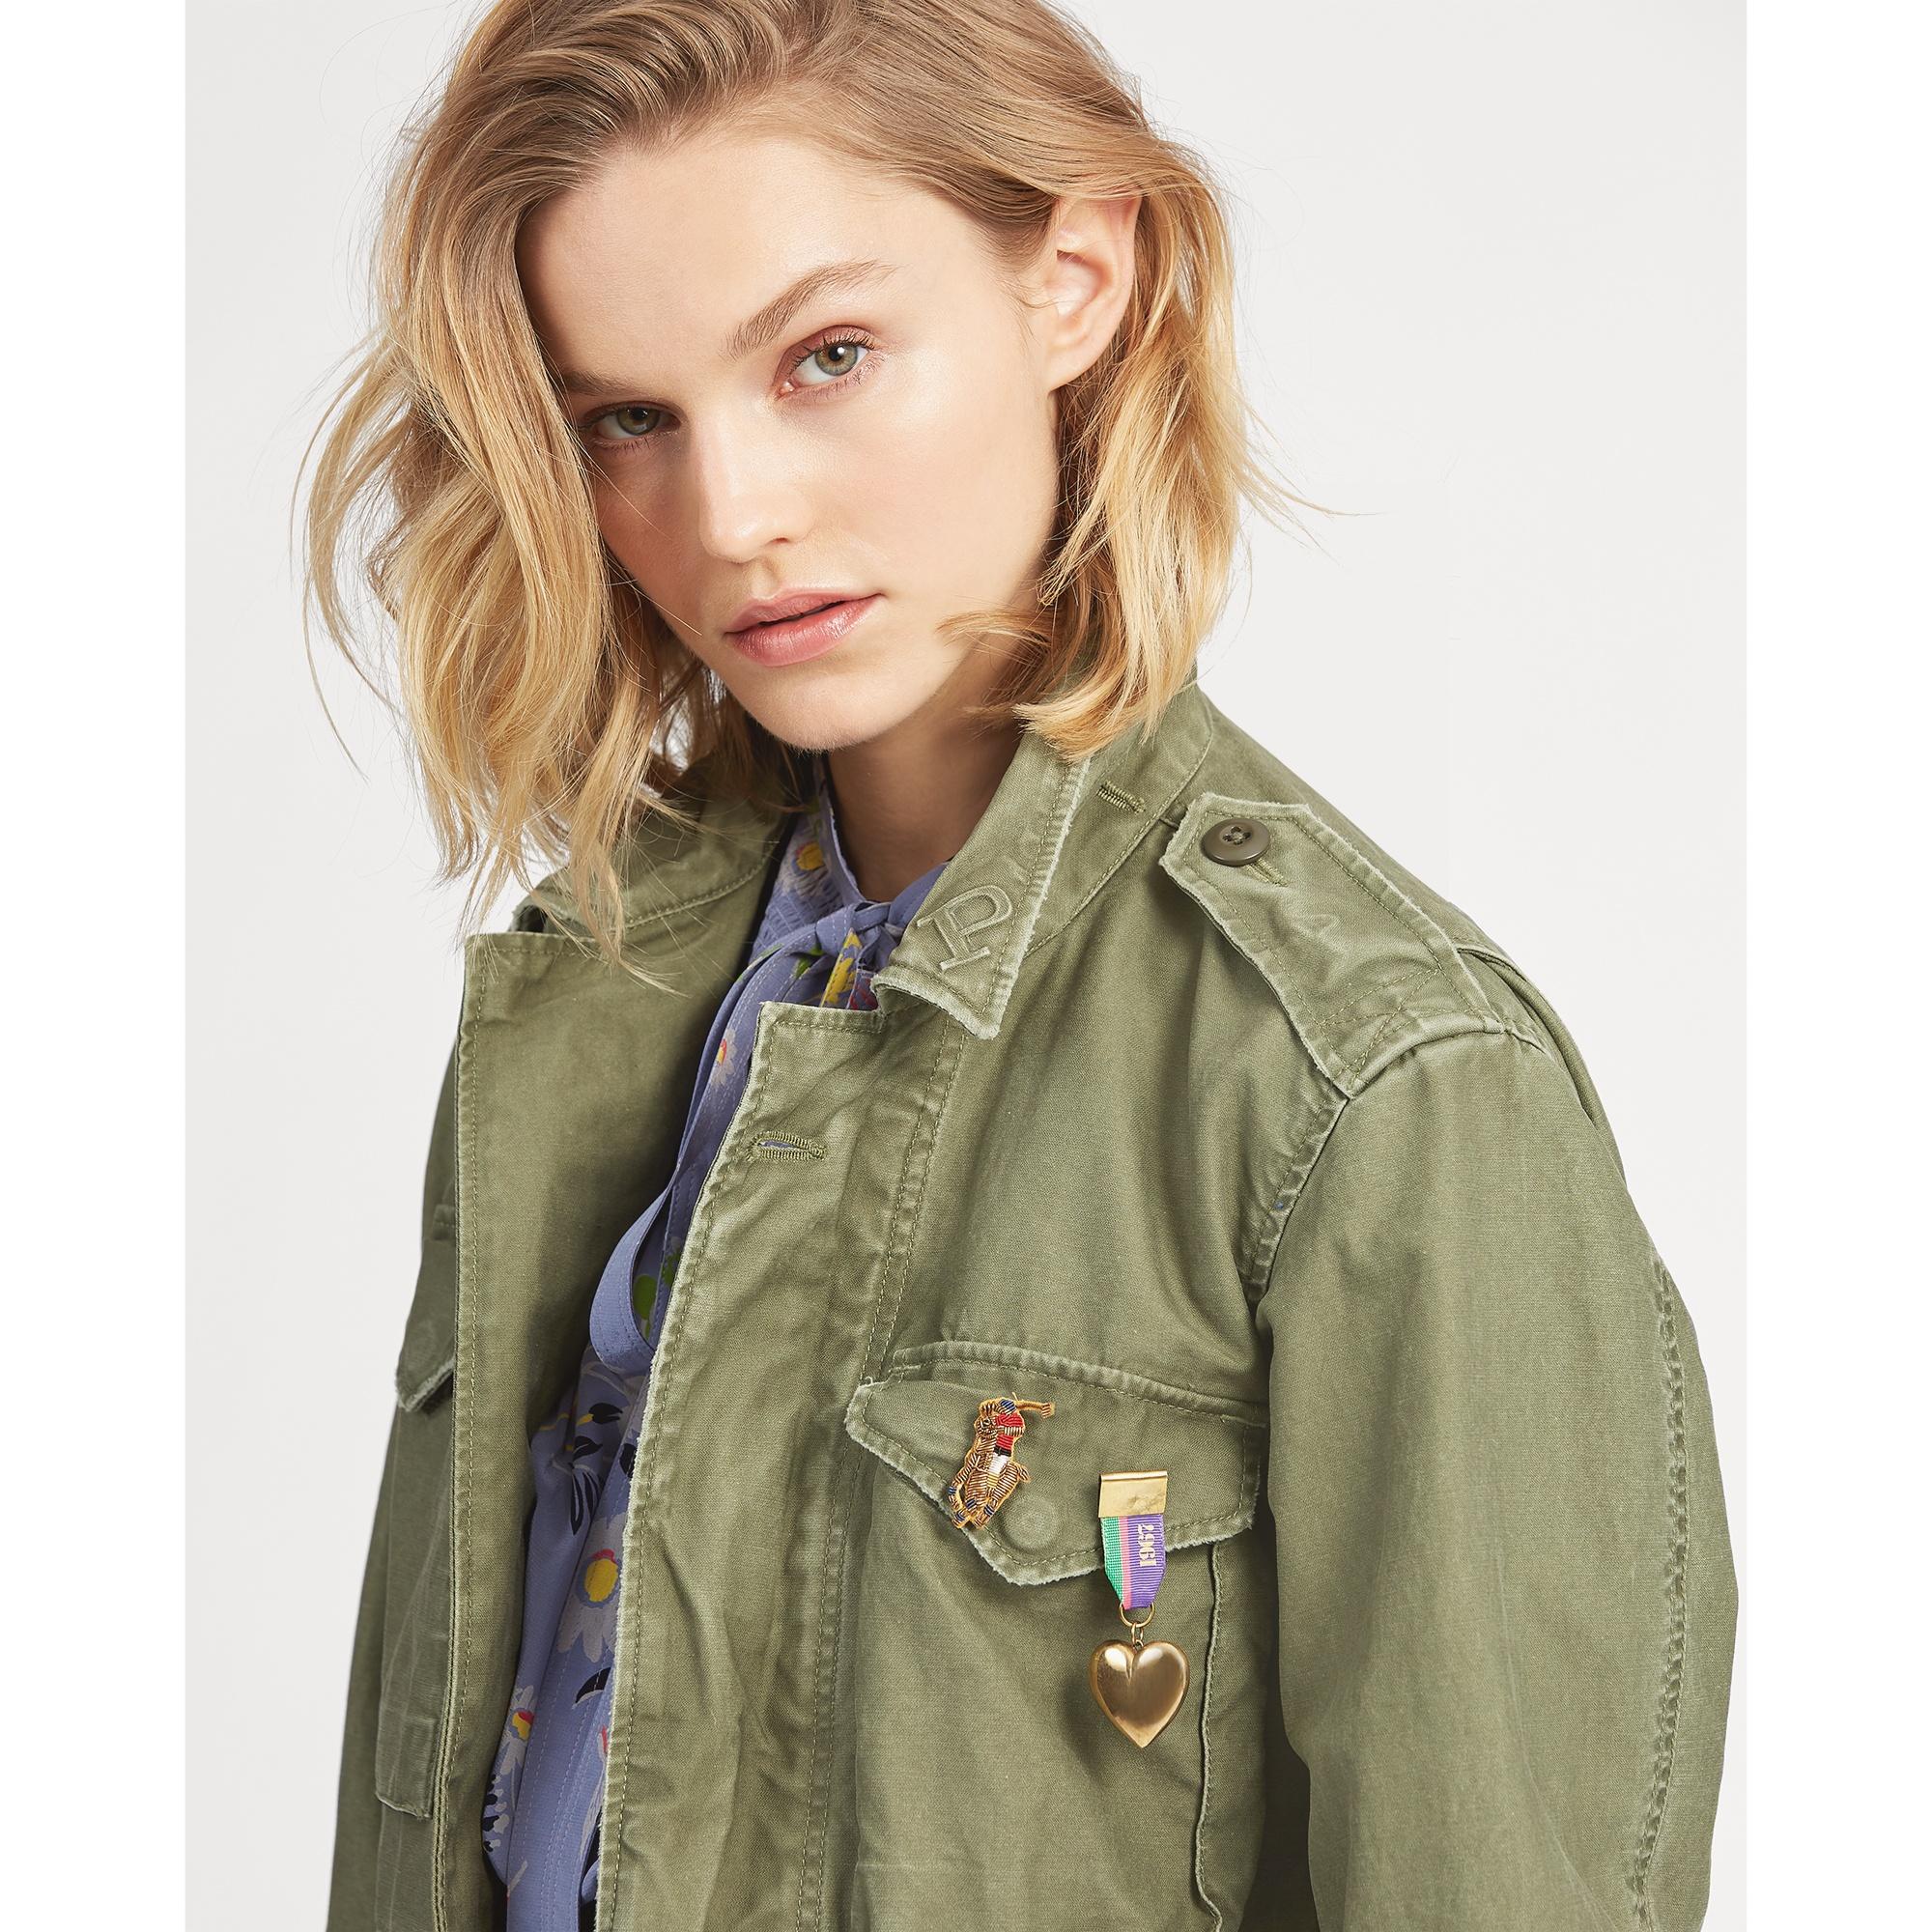 Lauren Ralph Lauren Military Jacket Clearance Discounts, Save 69% ...